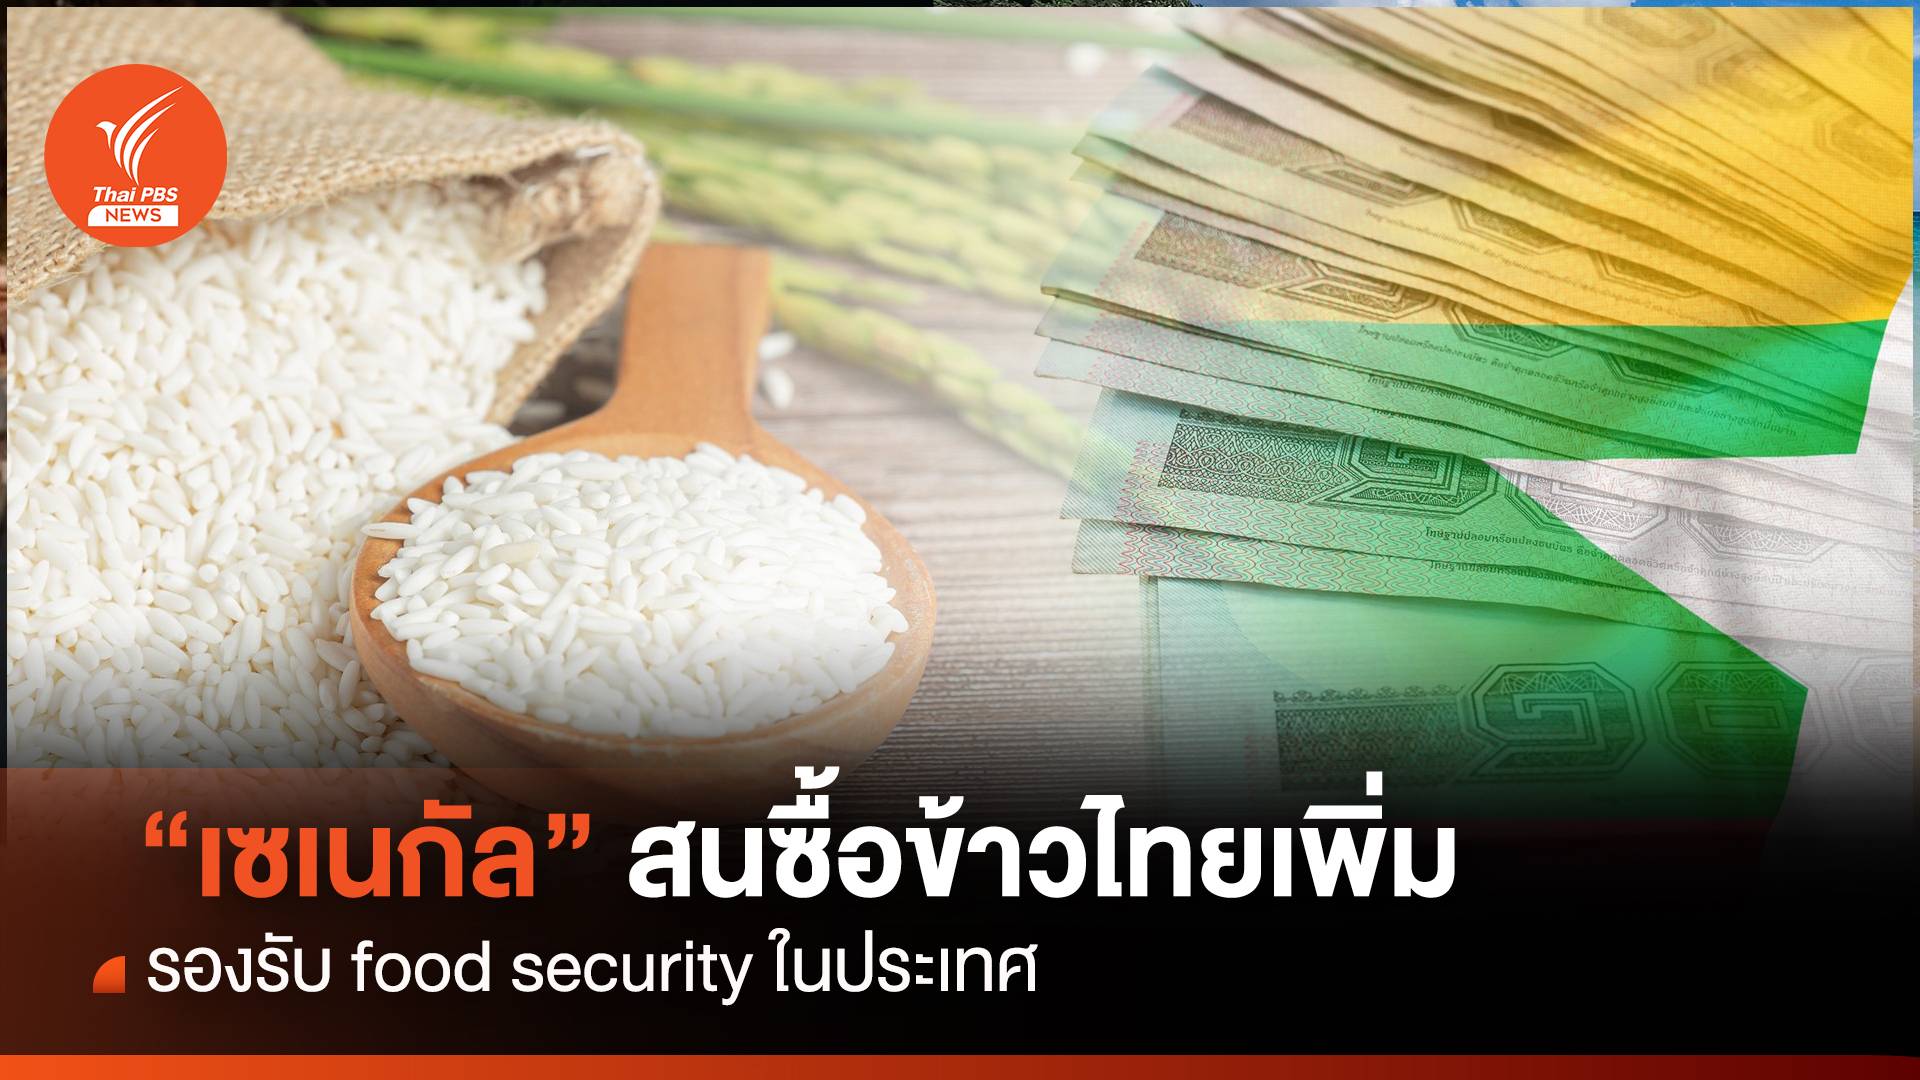 “เซเนกัล” สนซื้อข้าวไทยเพิ่ม รองรับ food security ในประเทศ